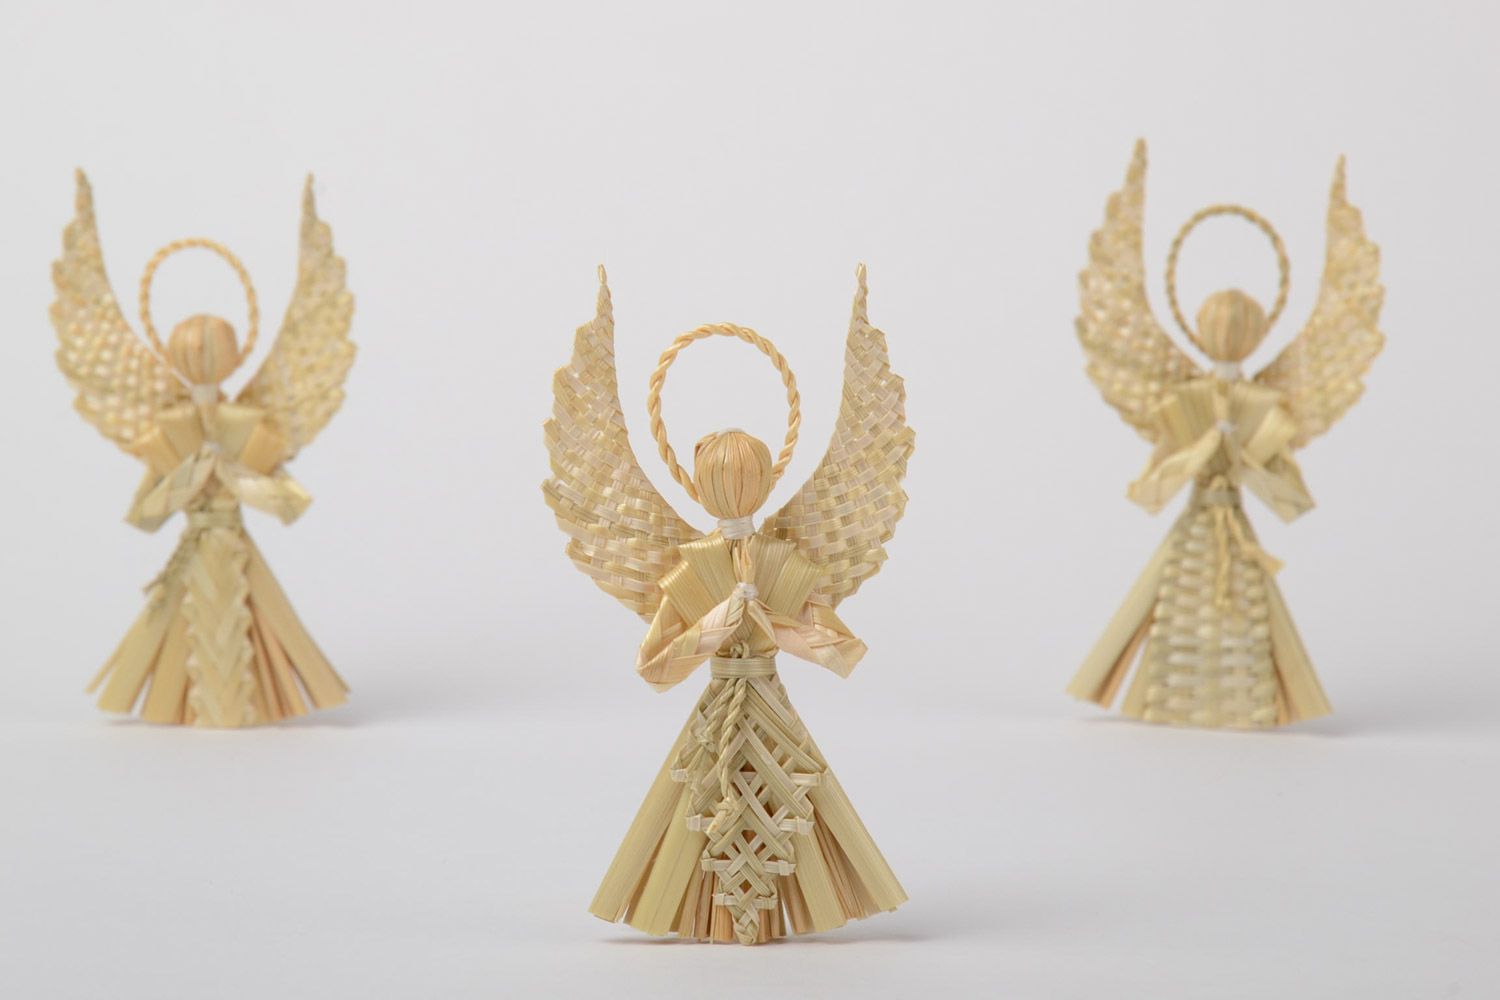 Geflochtene Interieur Anhänger in Form von Engeln Set 3 Stück Öko Dekor handmade foto 2